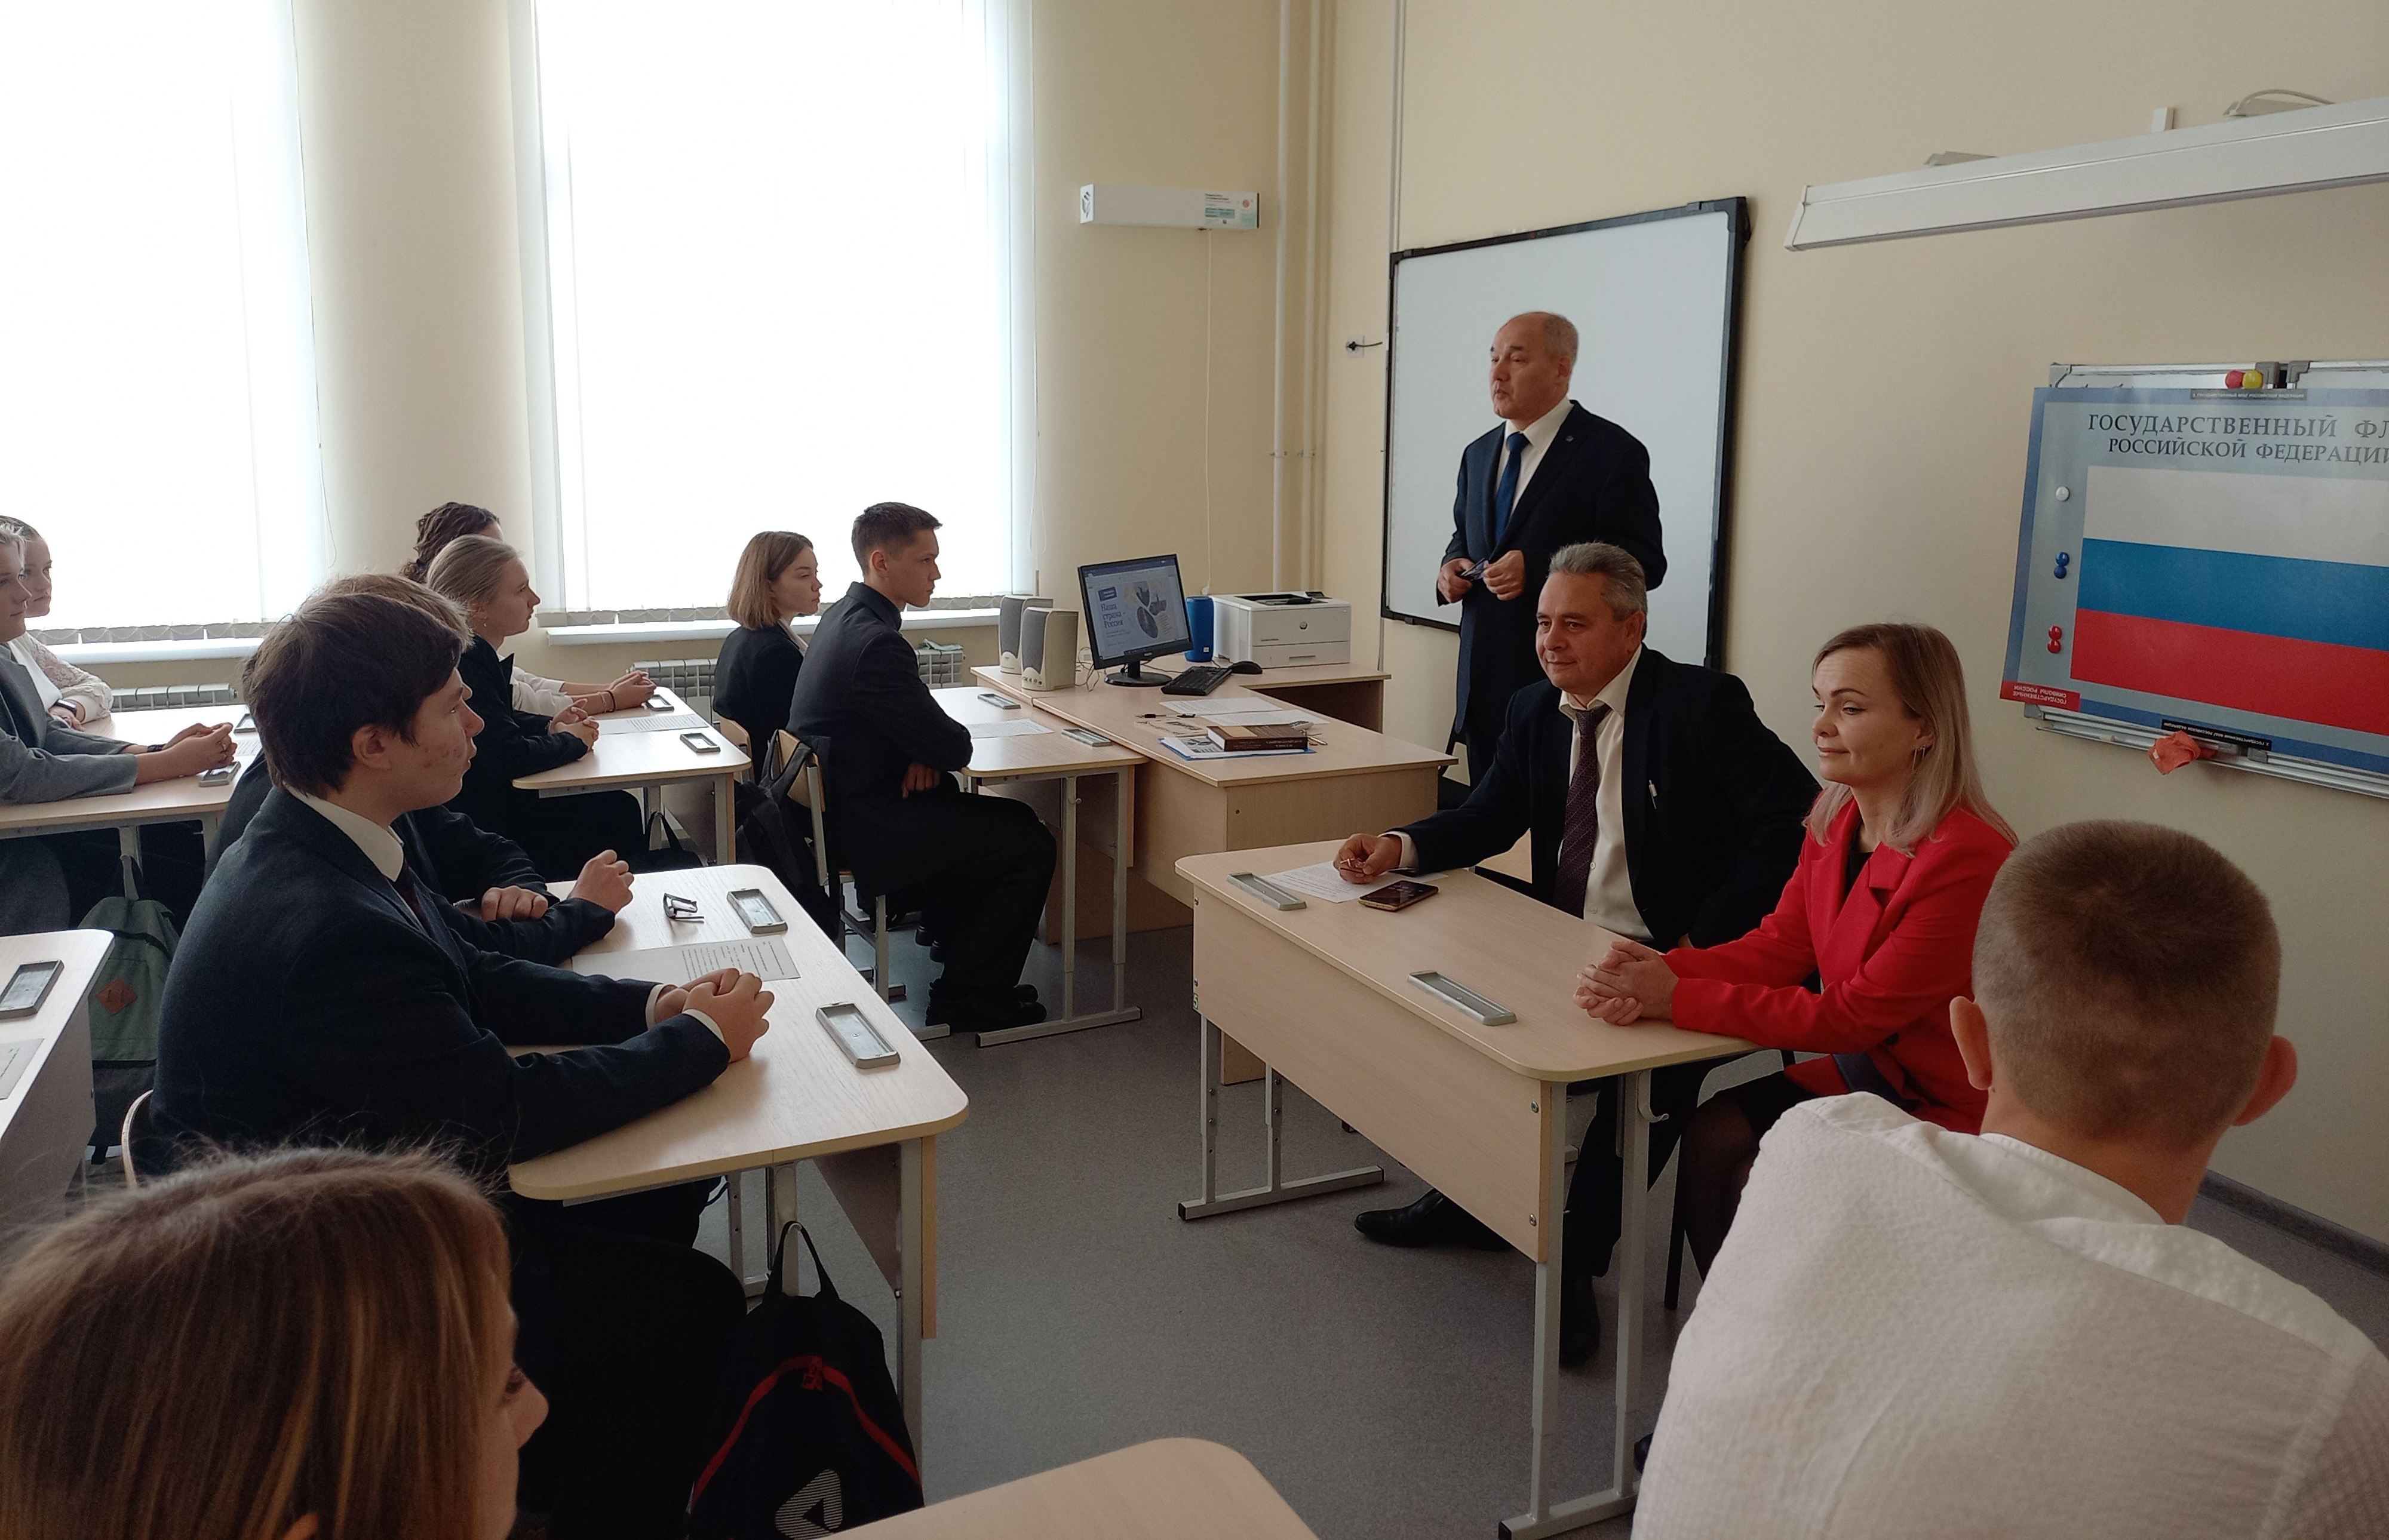 Костромской градоначальник Алексей Смирнов провел для школьников патриотический урок